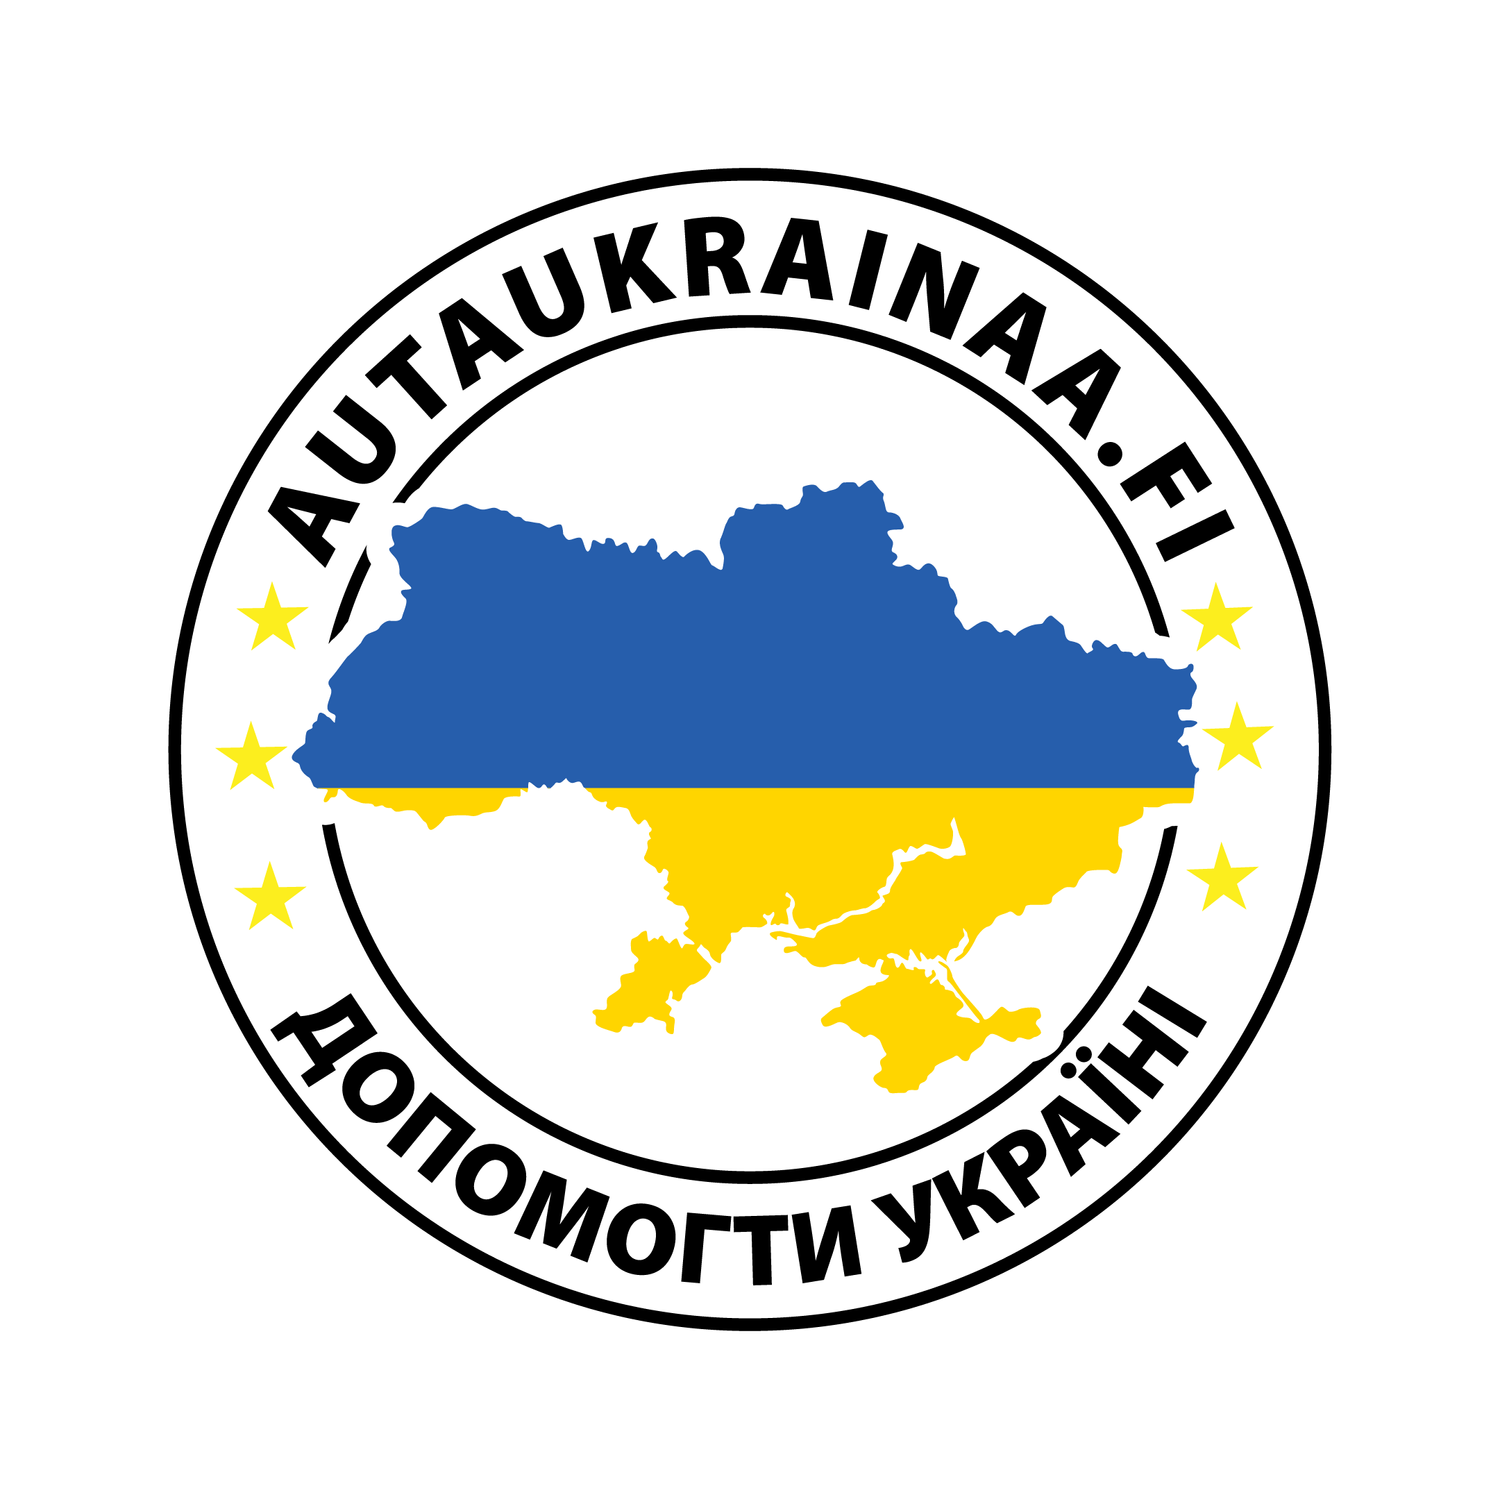 Ukrainanauha │ AutaUkrainaa.fi